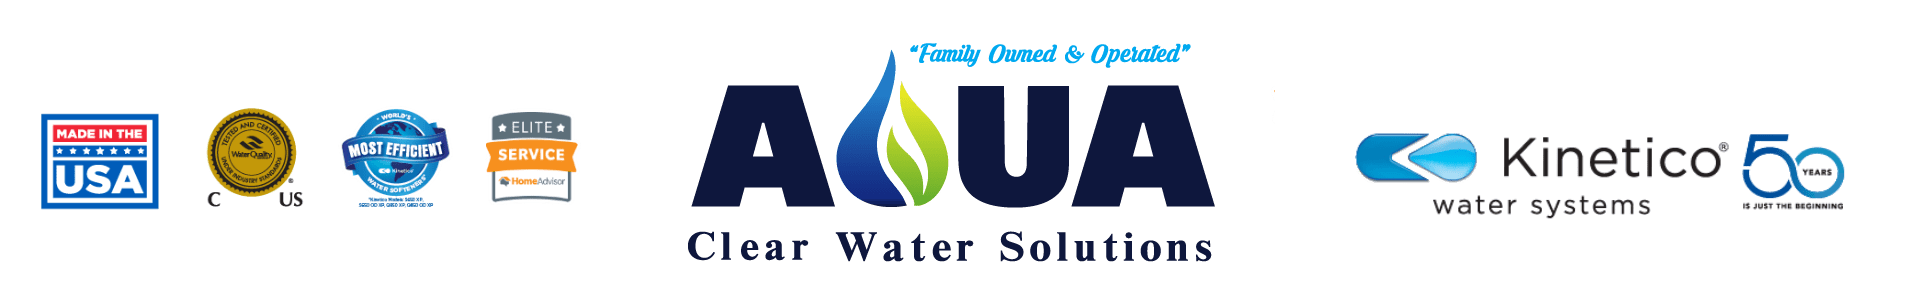 Aqua Clear Water Solutions Logo